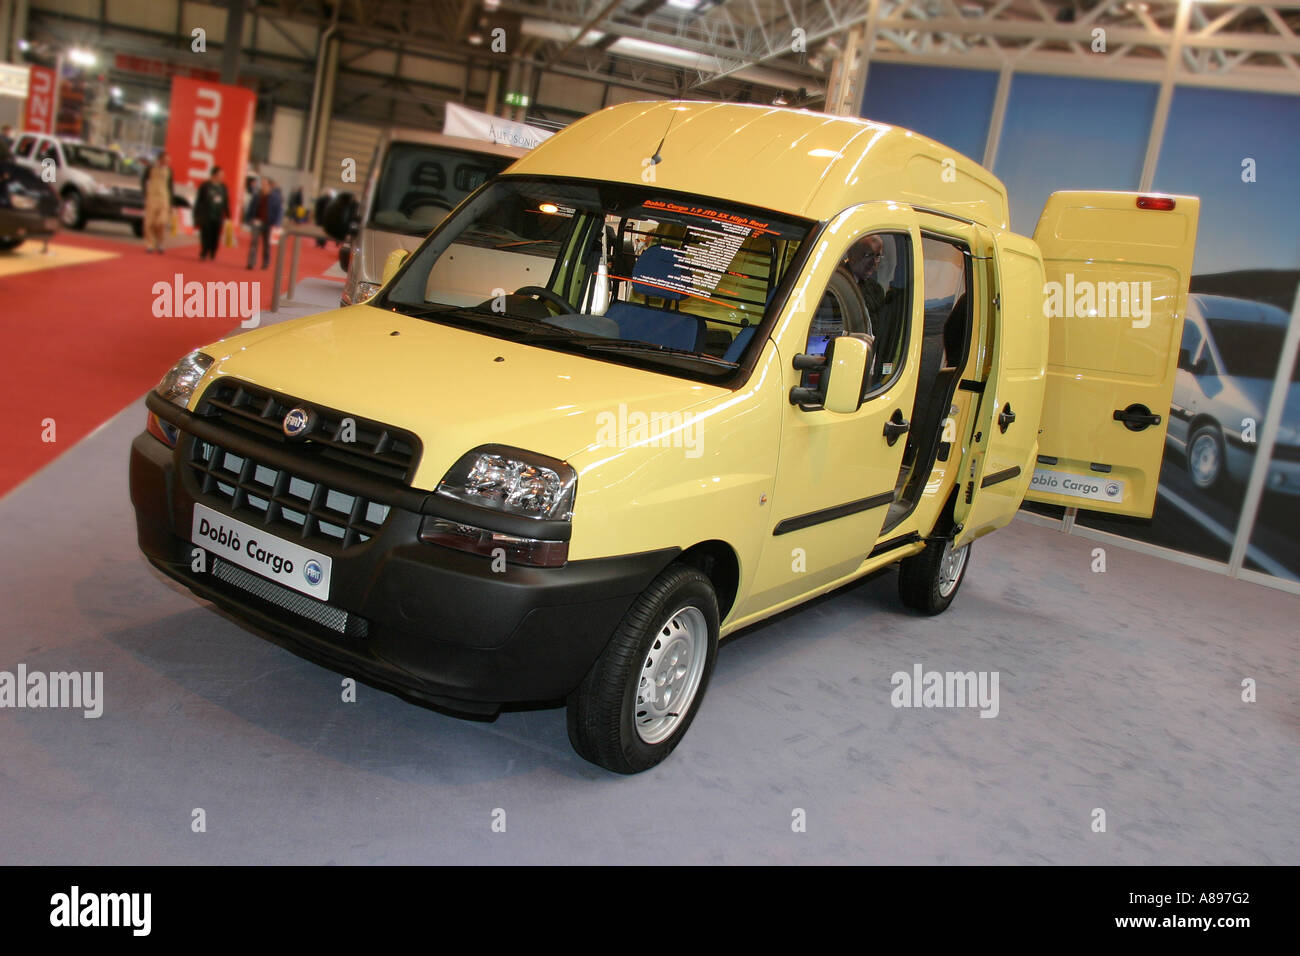 Fiat Doblo Cargo Van à la Commercial Vehicle Show, NEC, Birmingham, UK. Banque D'Images